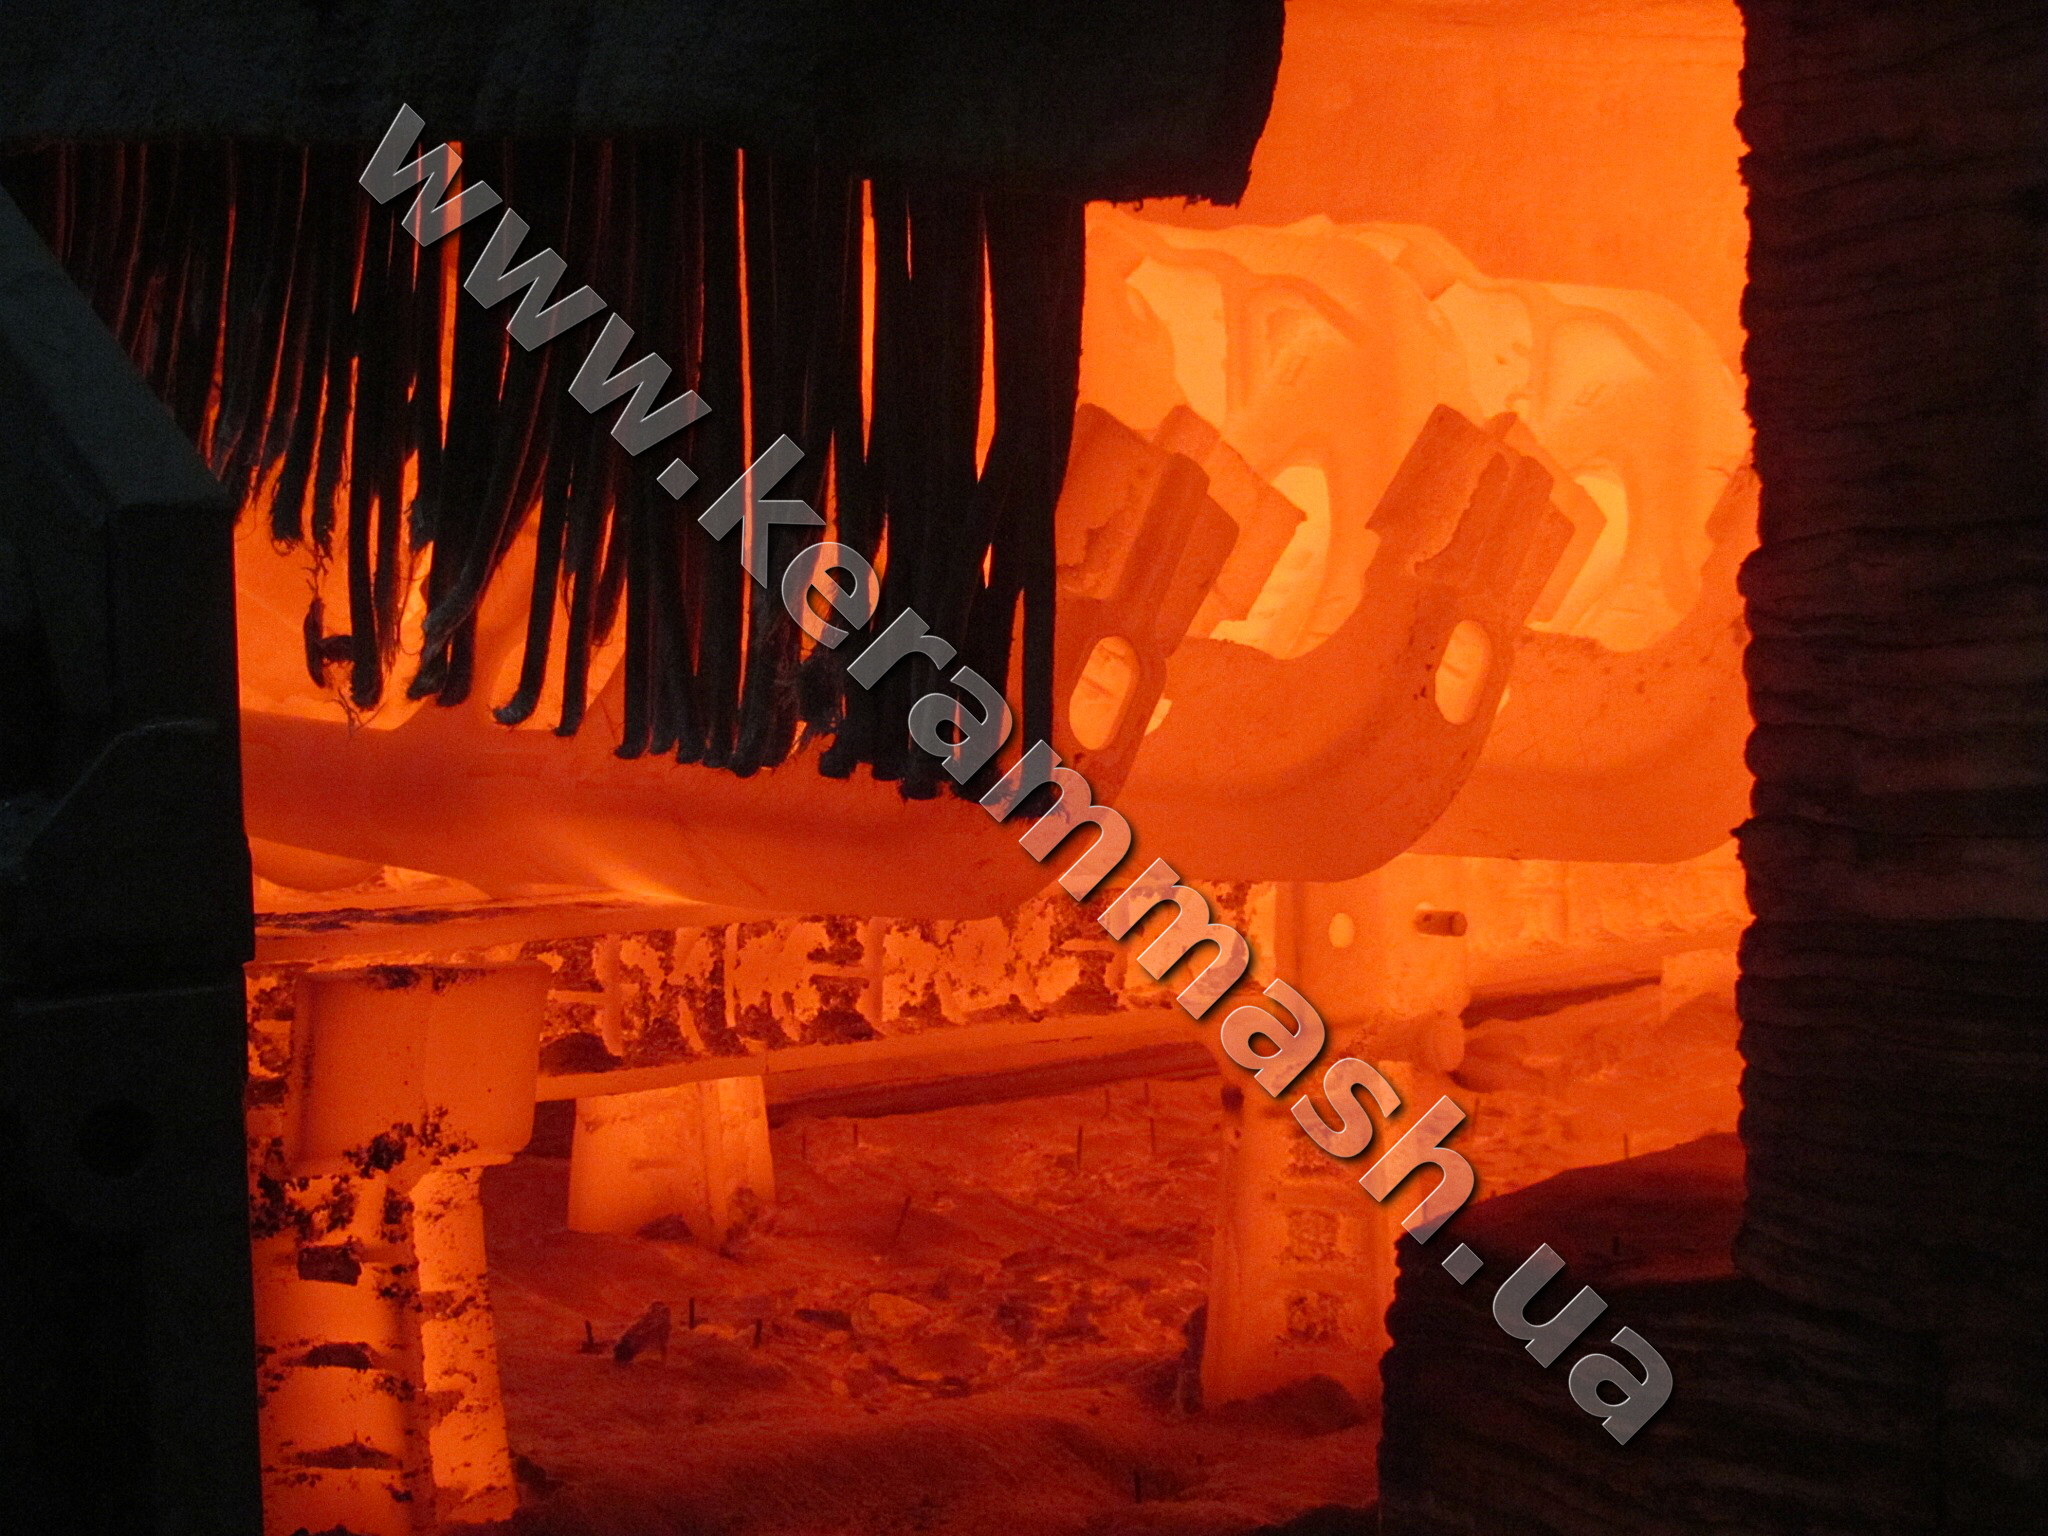 Промислова спеціалізована штовхальна газова піч для термообробки залізничного литва серії Термогаз ПрАТ Кераммаш